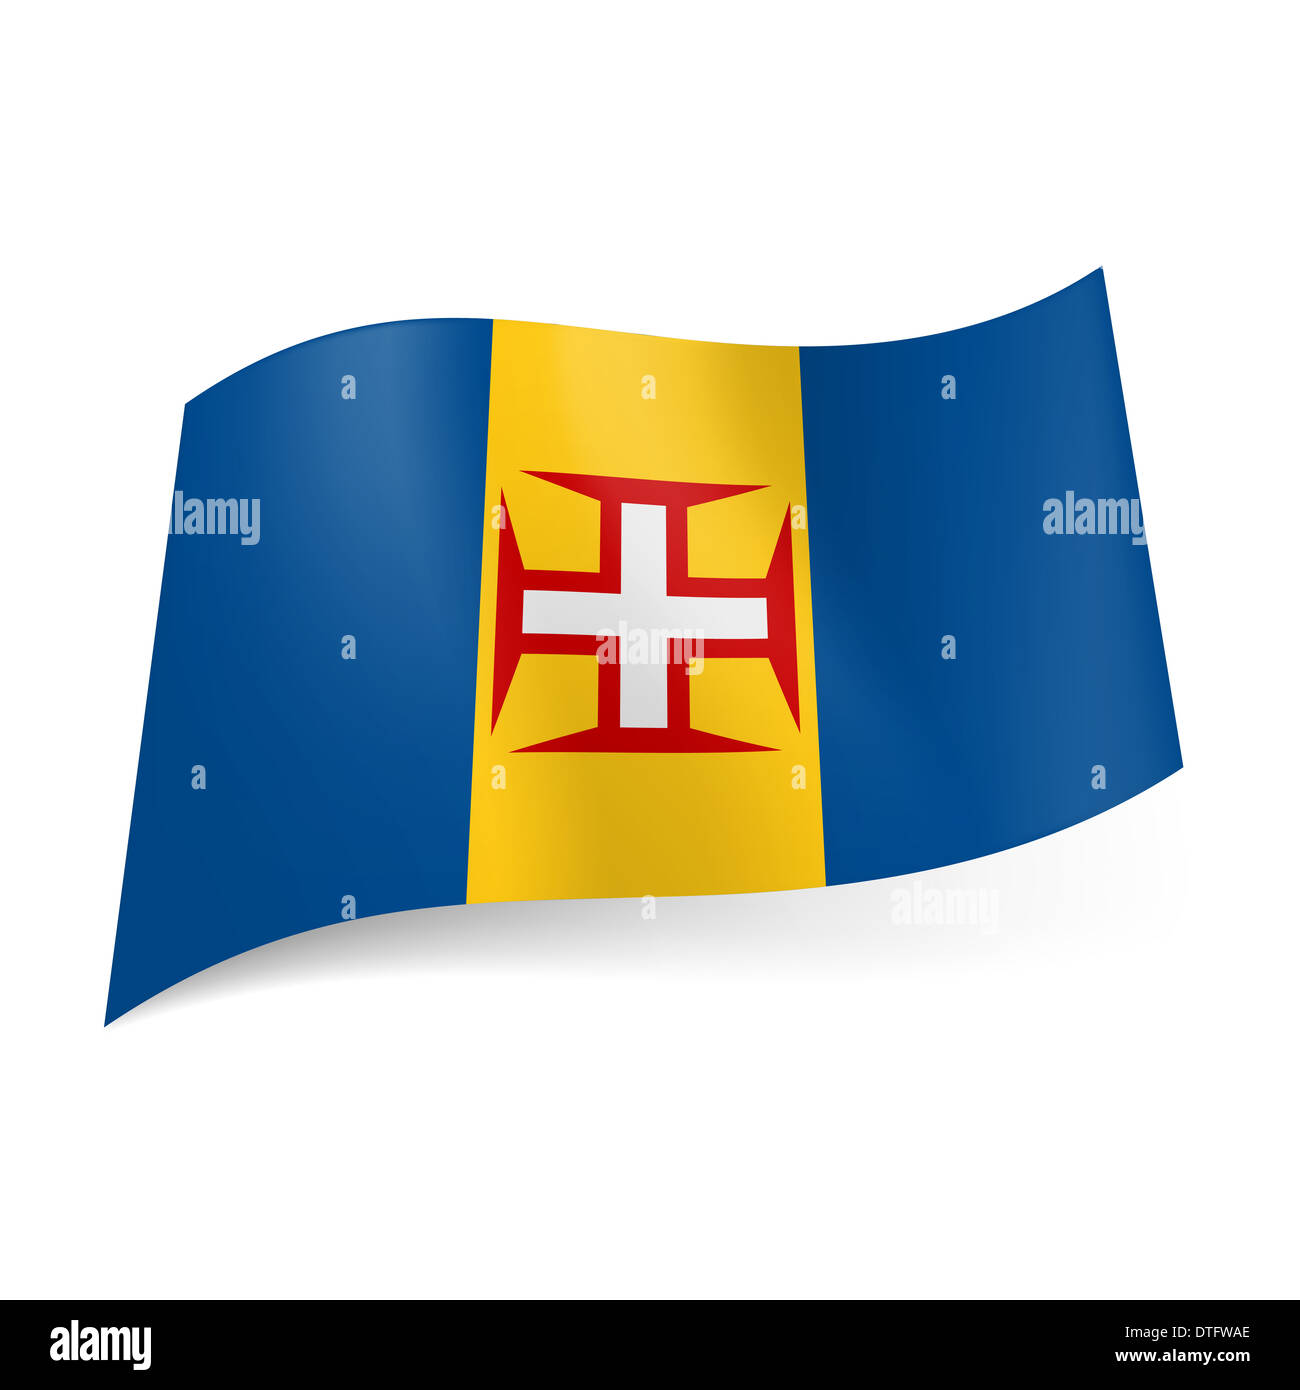 Flagge der autonomen Region von Portugal - Madeira: gelb und blau vertikale Streifen mit rot umrandeten weisses Kreuz auf Zentralband Stockfoto